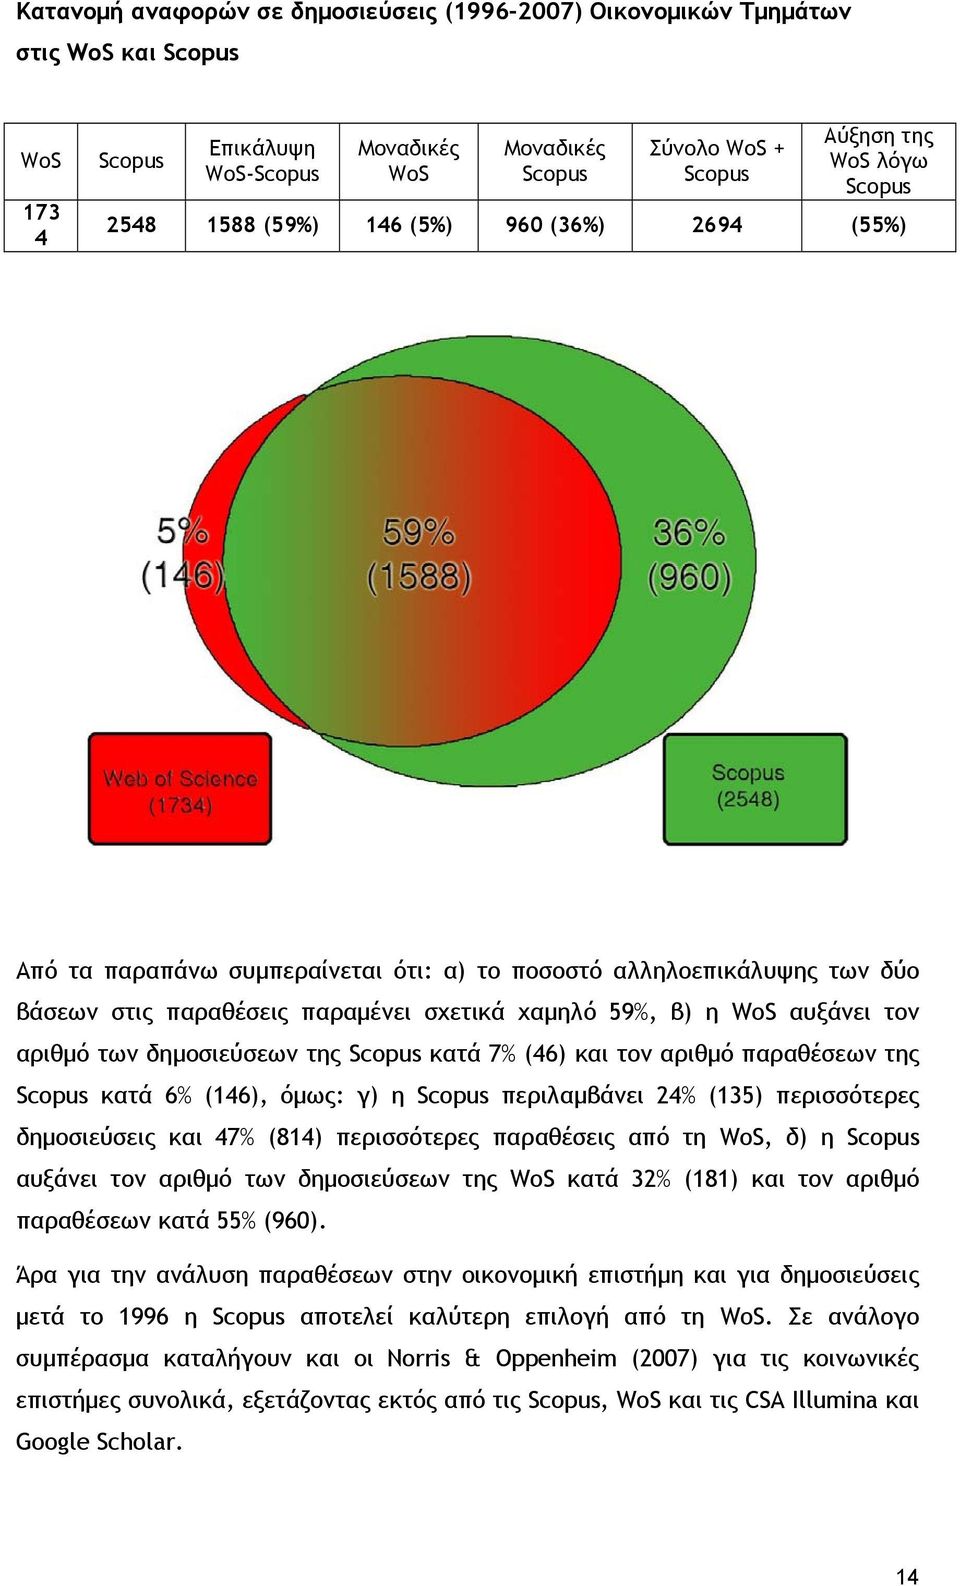 τον αριθμό των δημοσιεύσεων της Scopus κατά 7% (46) και τον αριθμό παραθέσεων της Scopus κατά 6% (146), όμως: γ) η Scopus περιλαμβάνει 24% (135) περισσότερες δημοσιεύσεις και 47% (814) περισσότερες